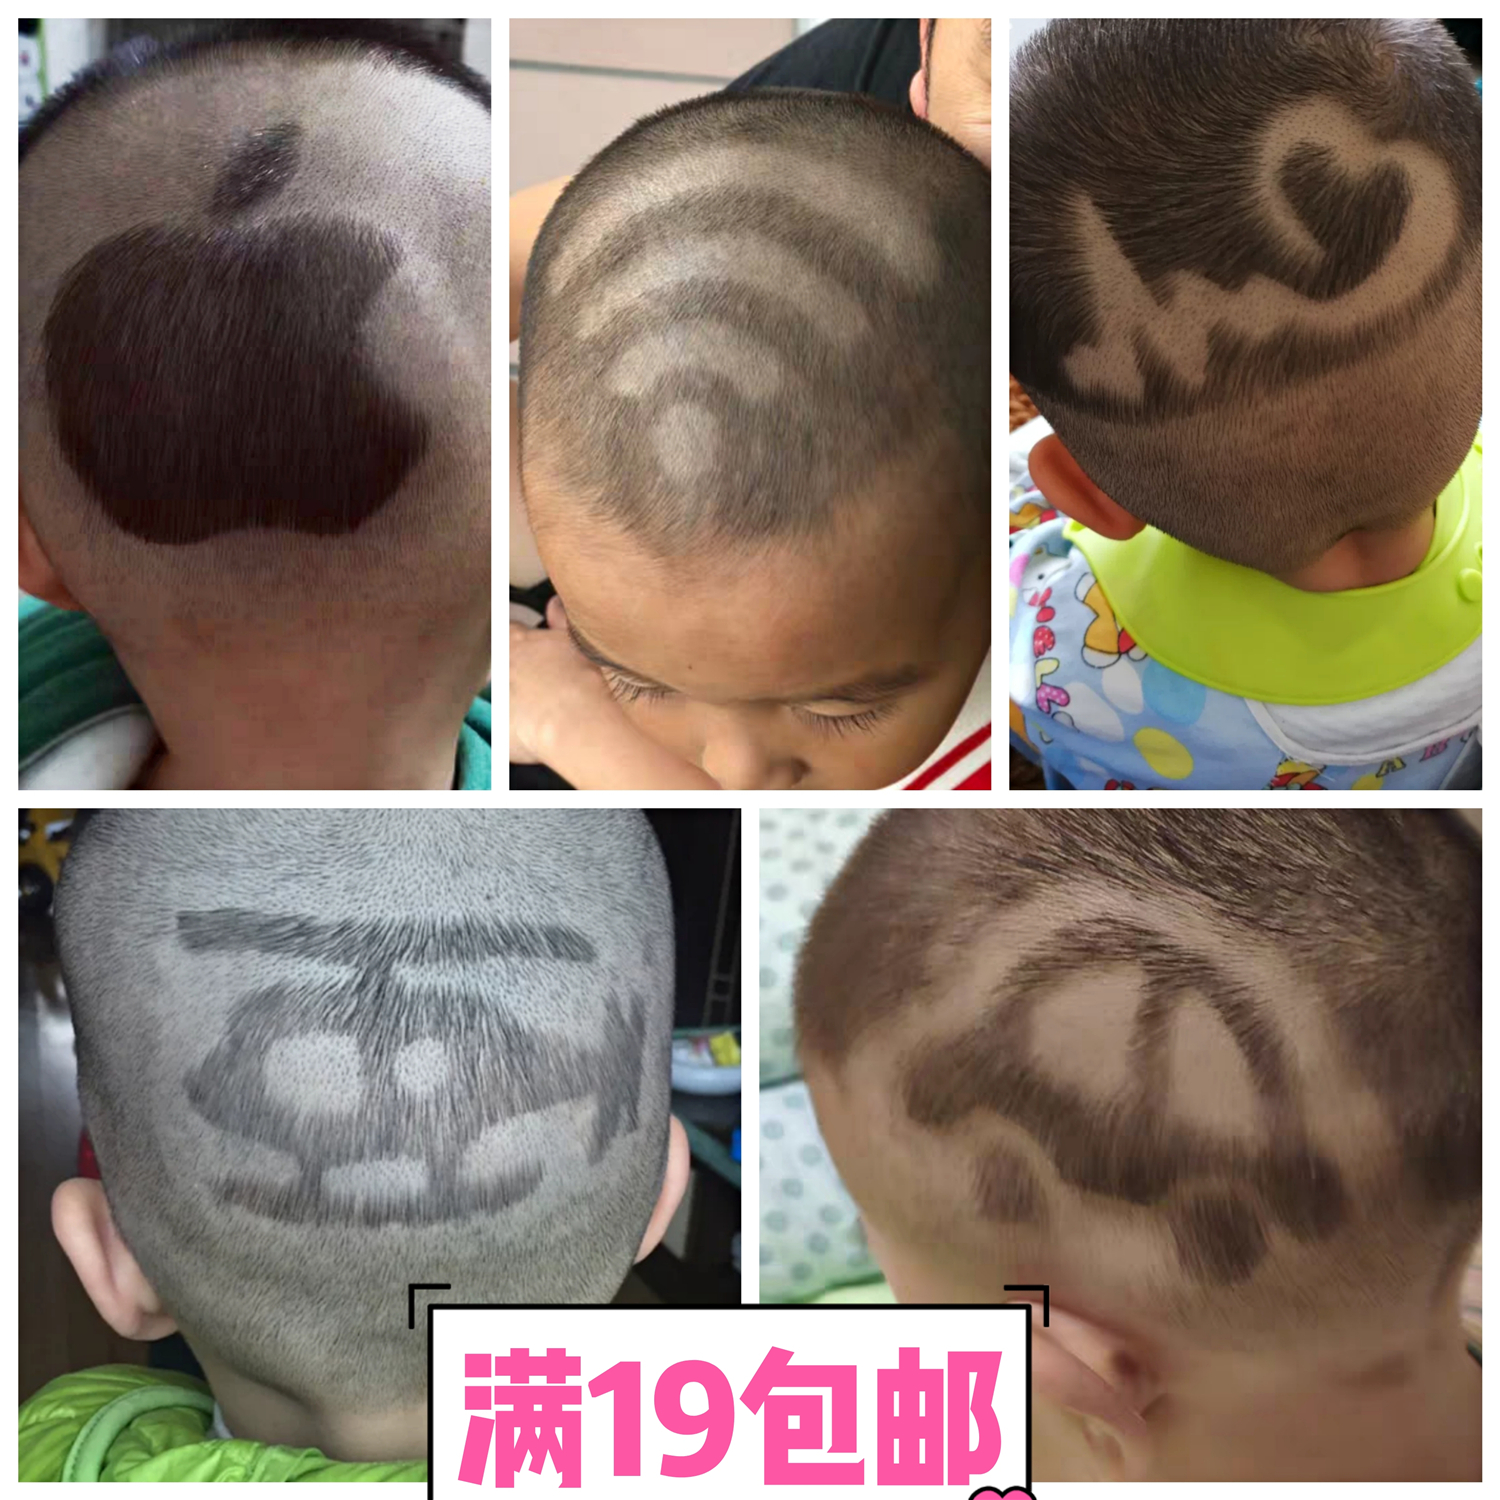 中号第三版 儿童理发模板 宝宝发型 剪发造型贴纸 男孩发艺一次性